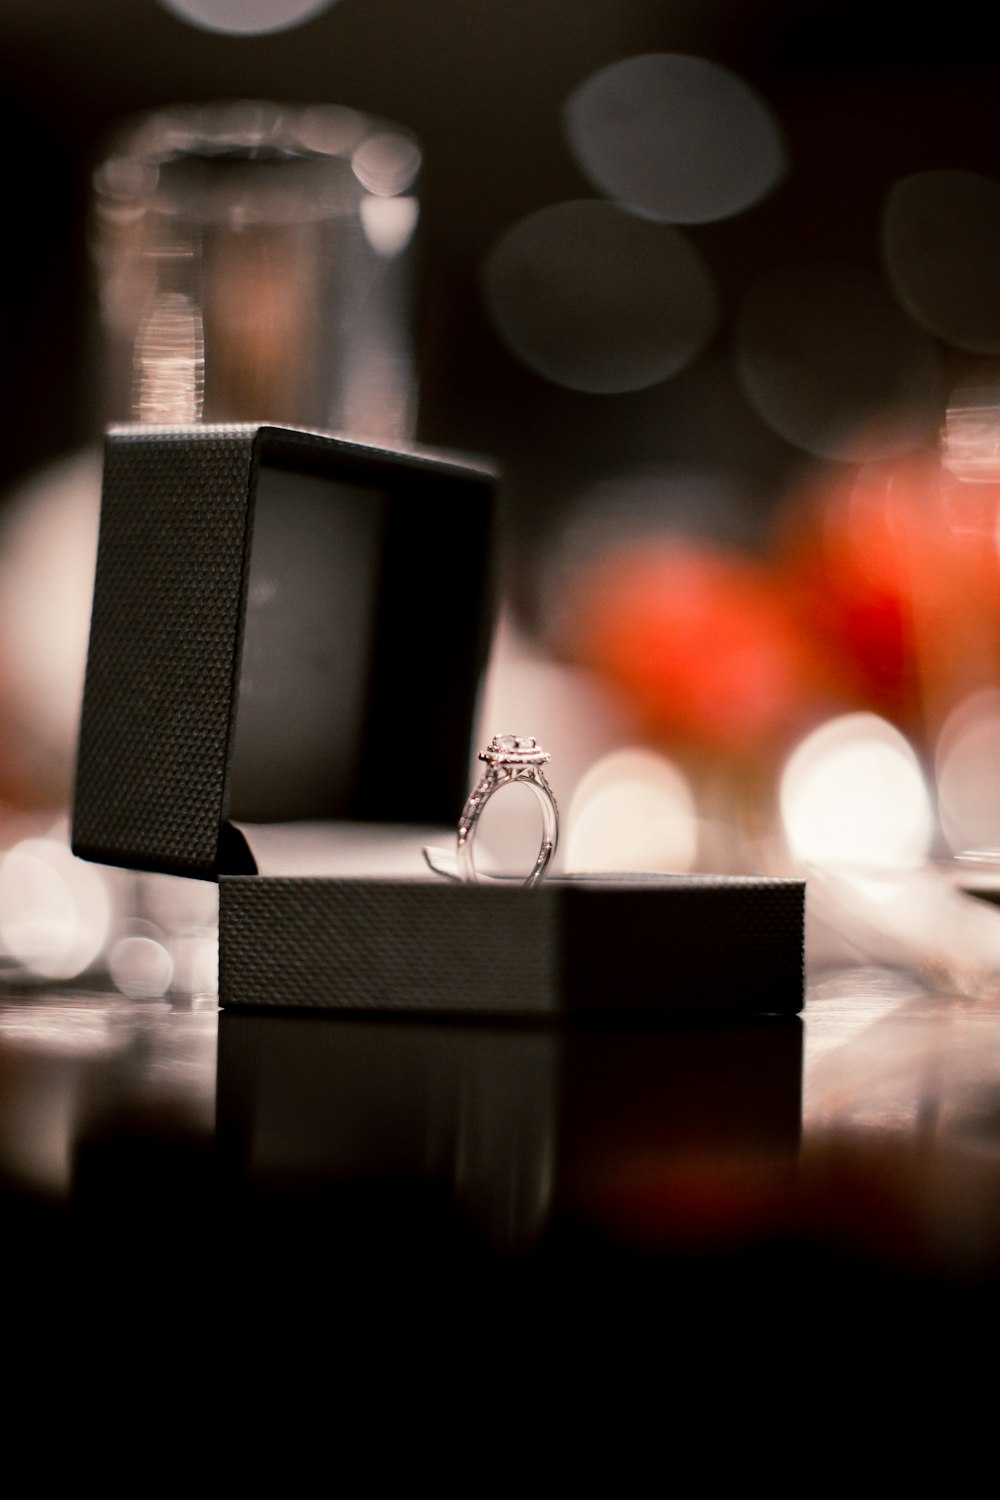 anel de prata com solitário de diamante em uma caixa preta